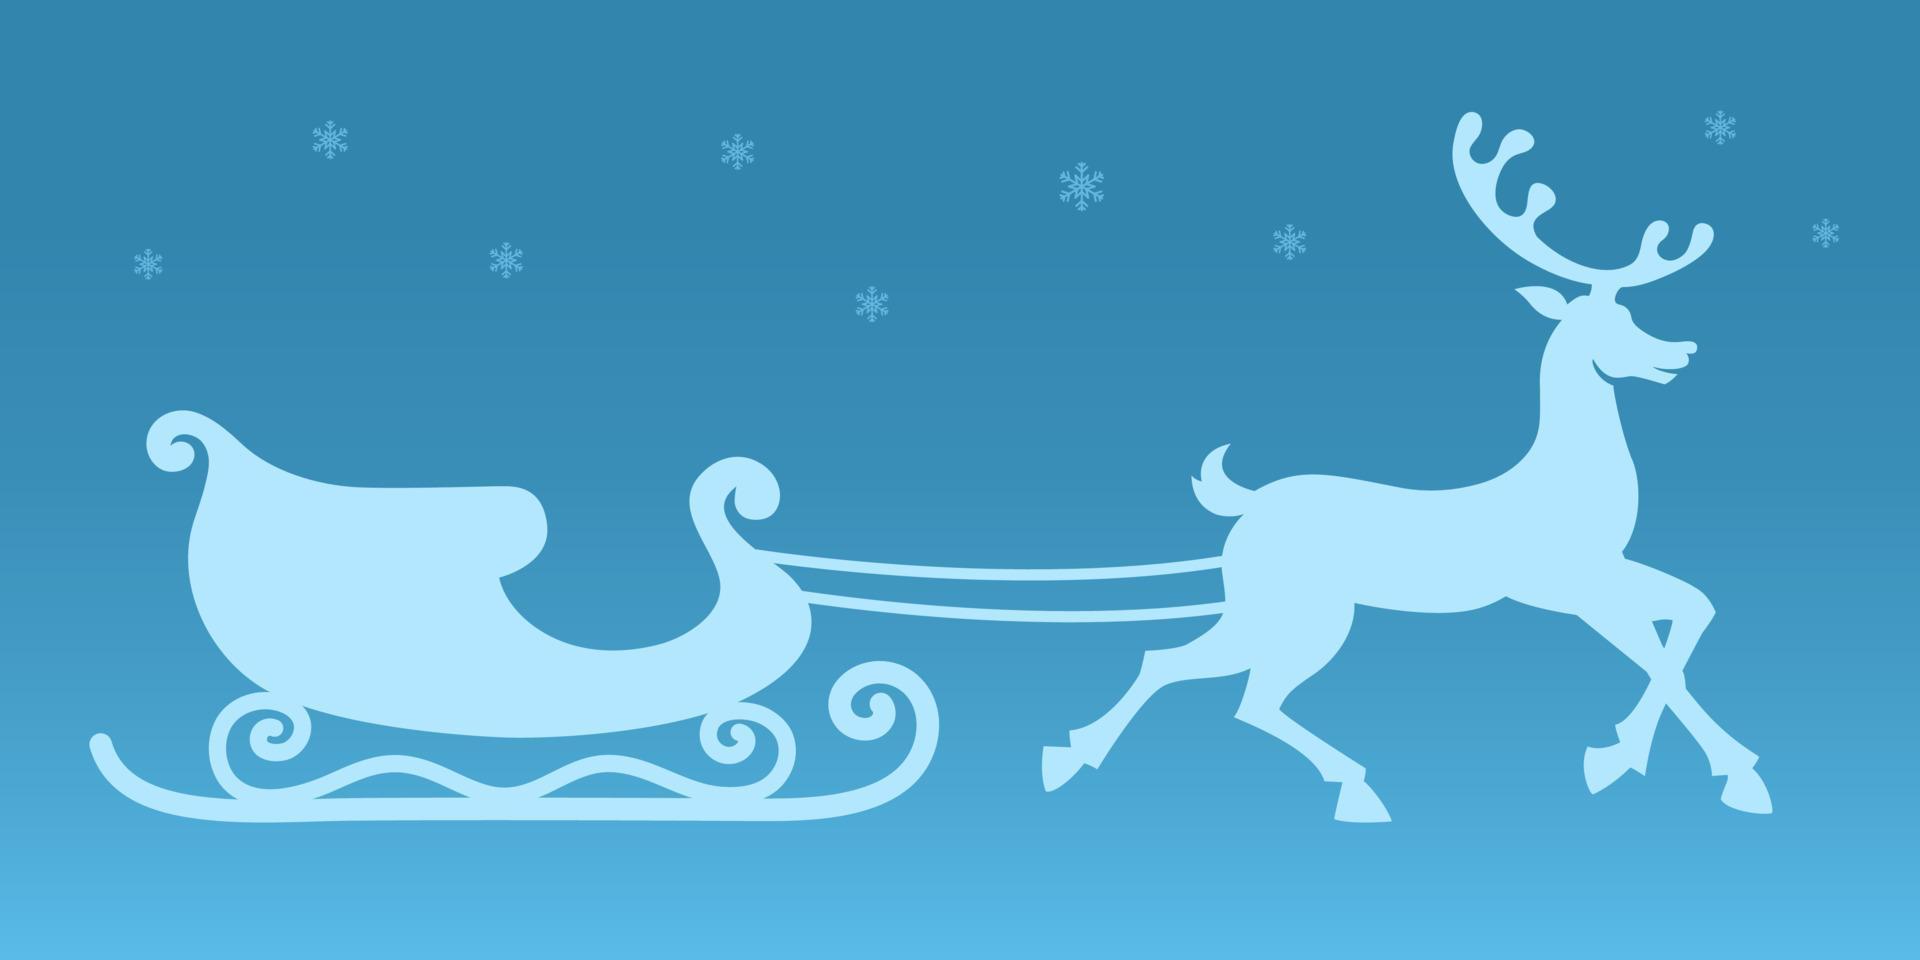 traîneau et rennes. vecteur silhouette. autocollant de Noël. traîneau du père noël et rennes attelés. fond bleu avec des flocons de neige. illustration de noël pour les décorations